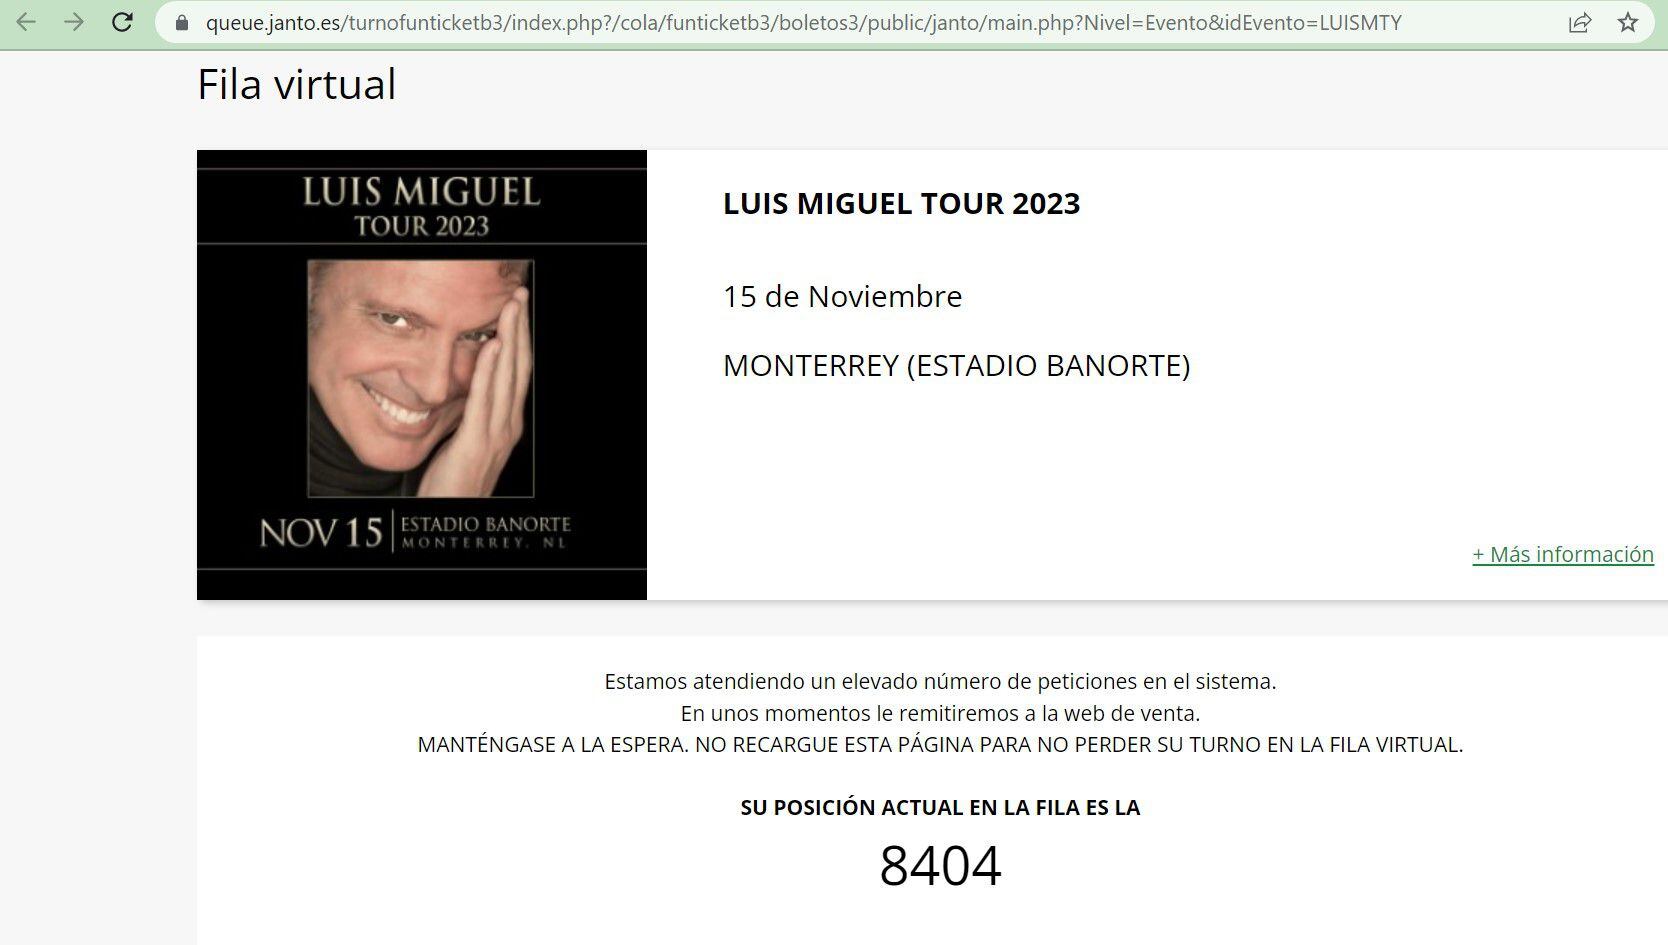 Fun Ticket es la plataforma en la que se obtienen los boletos para el concierto de Luis Miguel en Monterrey.